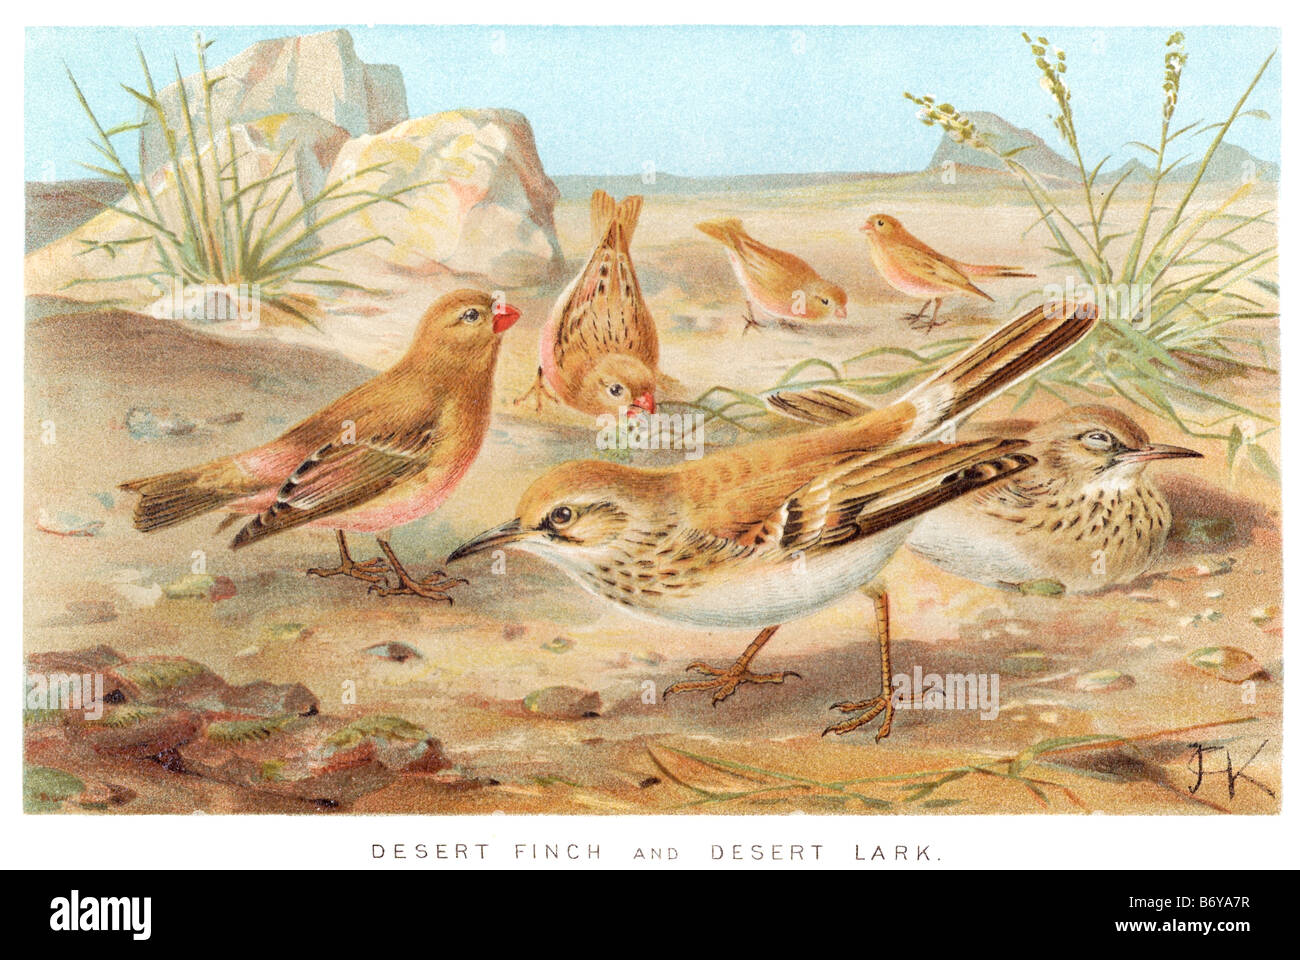 Deserto finch lark fringuelli sono uccelli passerine, spesso seme-mangiare, si trovano principalmente nell emisfero nord e l'Africa. Uno subfam Foto Stock